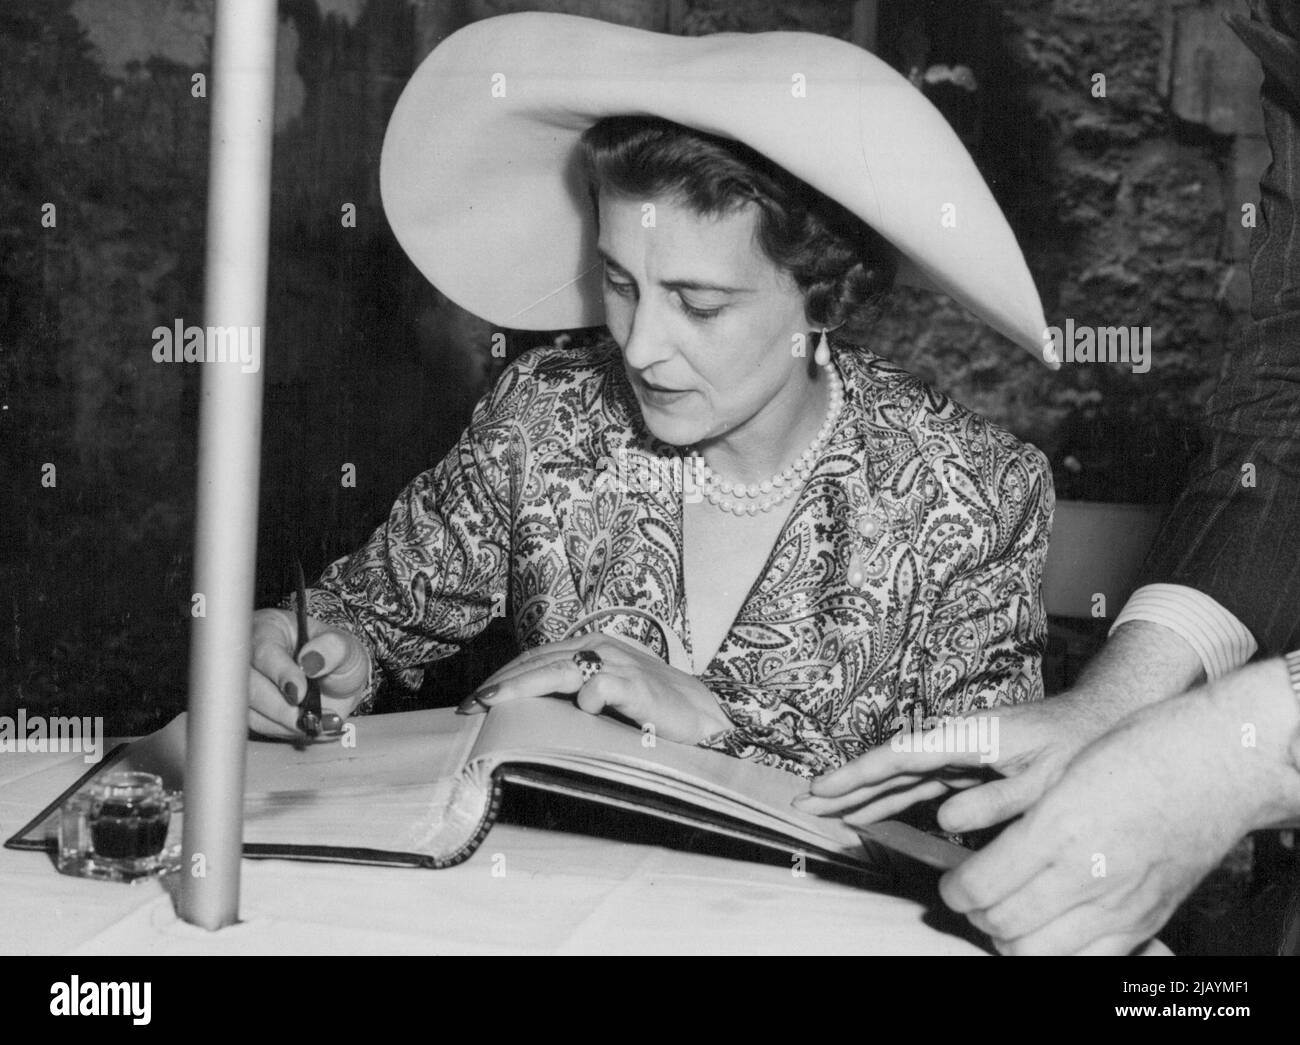 Die Herzogin von Kent signiert im British Hospital, Paris - die Herzogin von Kent signiert das Gästebuch im British Hospital, Paris. Die Herzogin von Kent, die jetzt für einen dreitägigen Aufenthalt in Paris ist, besuchte hier das Hertford British Hospital, bevor sie zu einem Ball zugunsten des Krankenhauses im Pre Catelan ging. 23. Juni 1949. (Foto von Planet News) Stockfoto